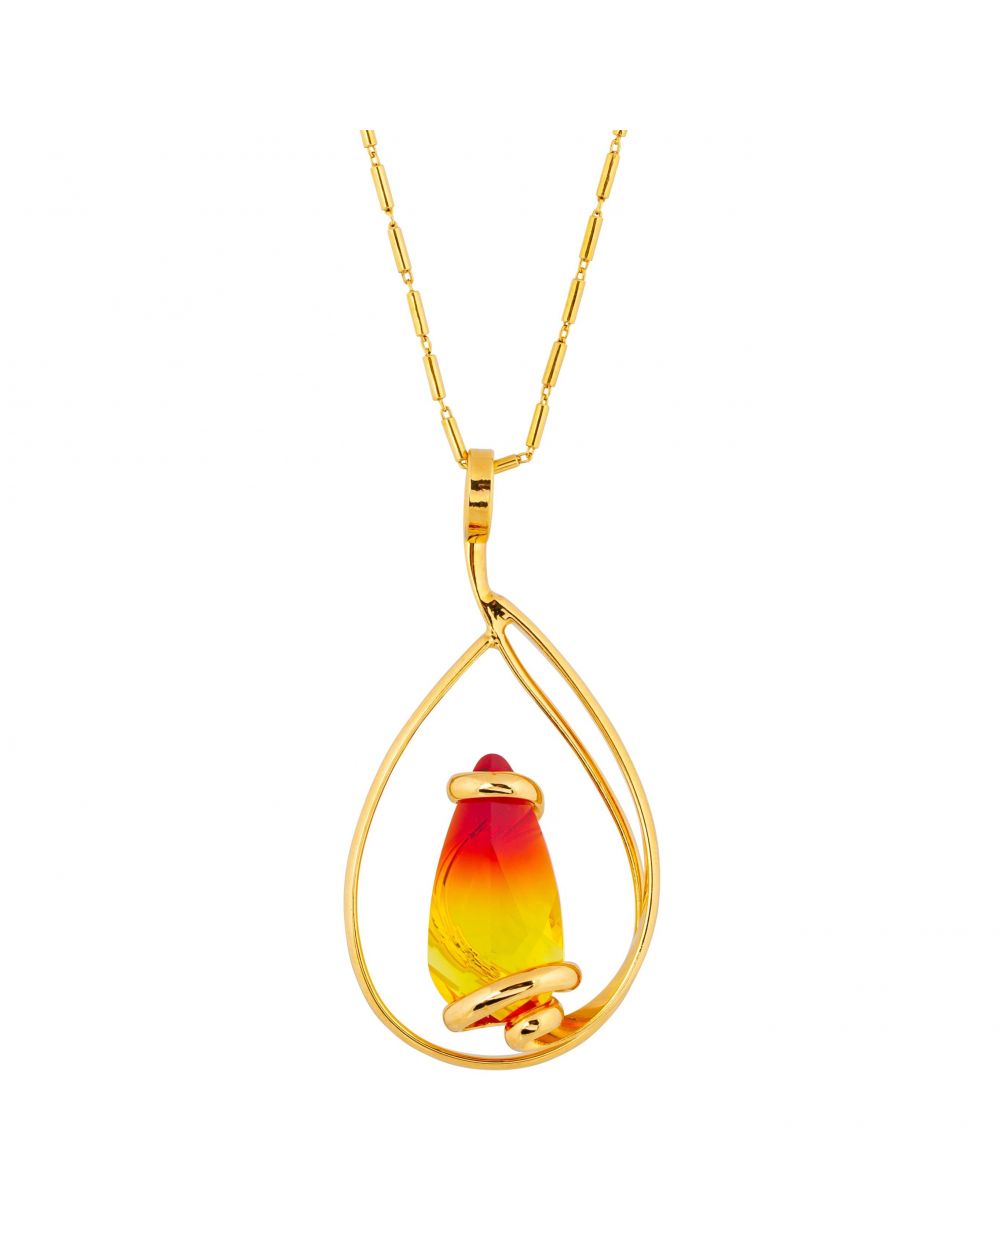 Collier Andrea Marazzini, pierre Swarovski Elegant Fire Opal